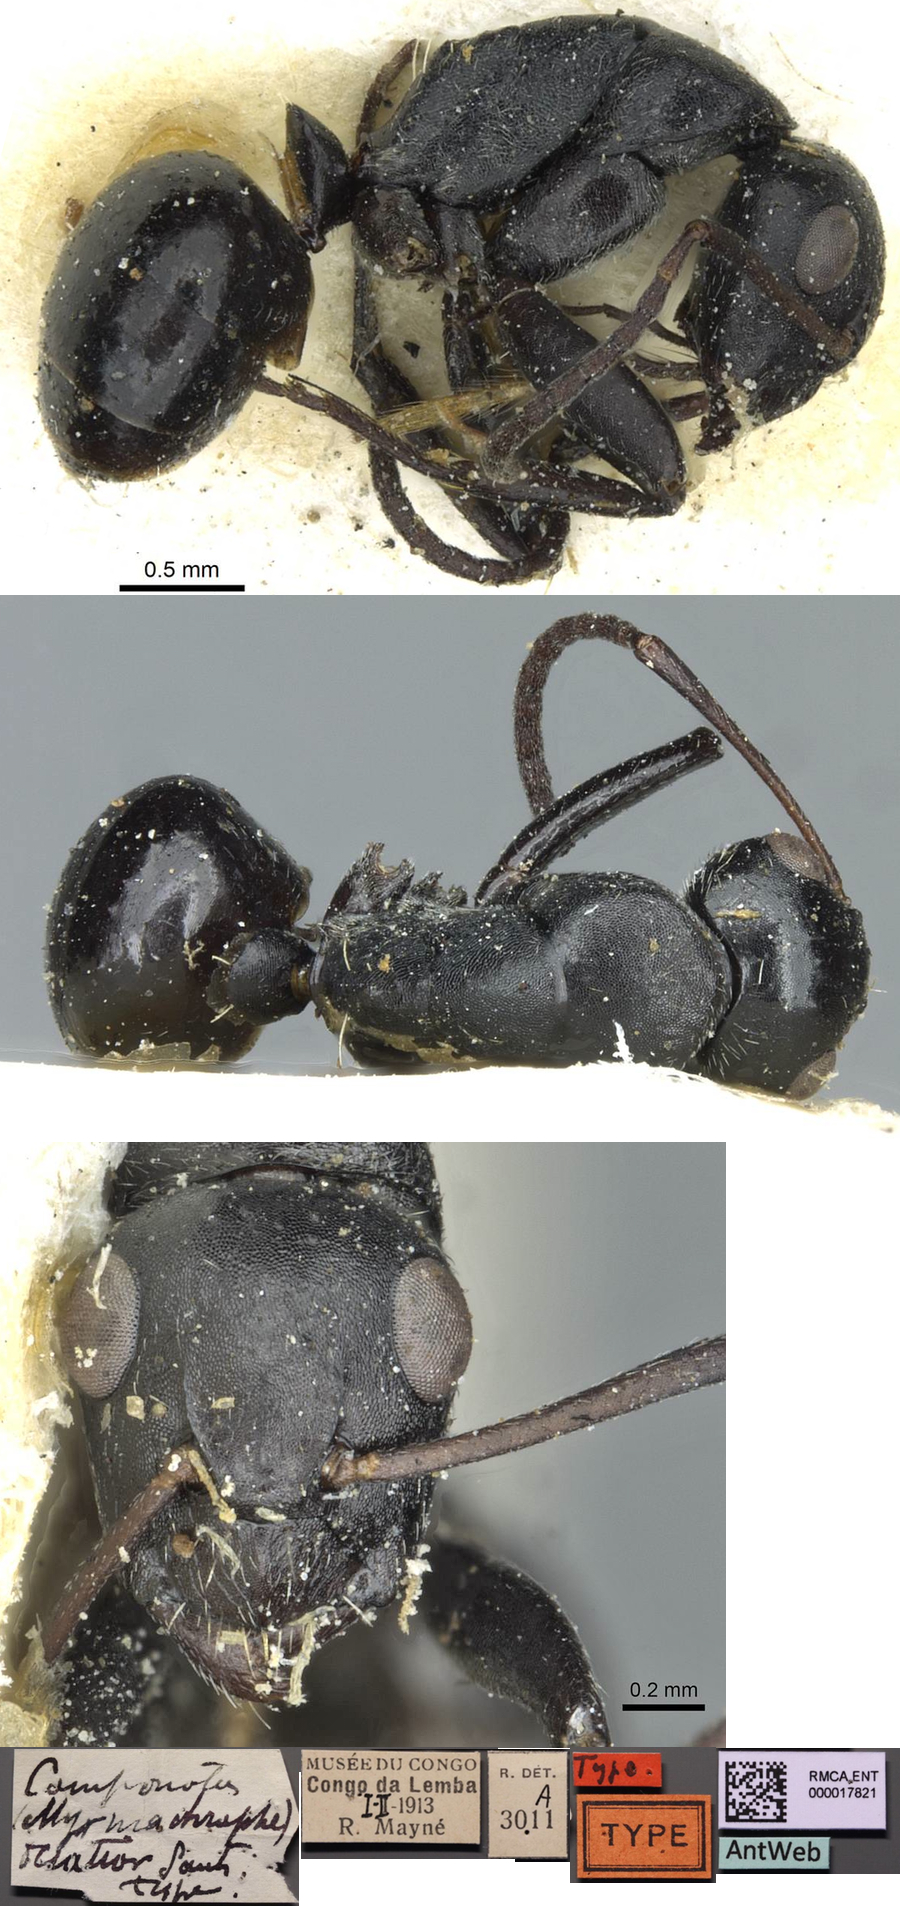 Camponotus oculatior